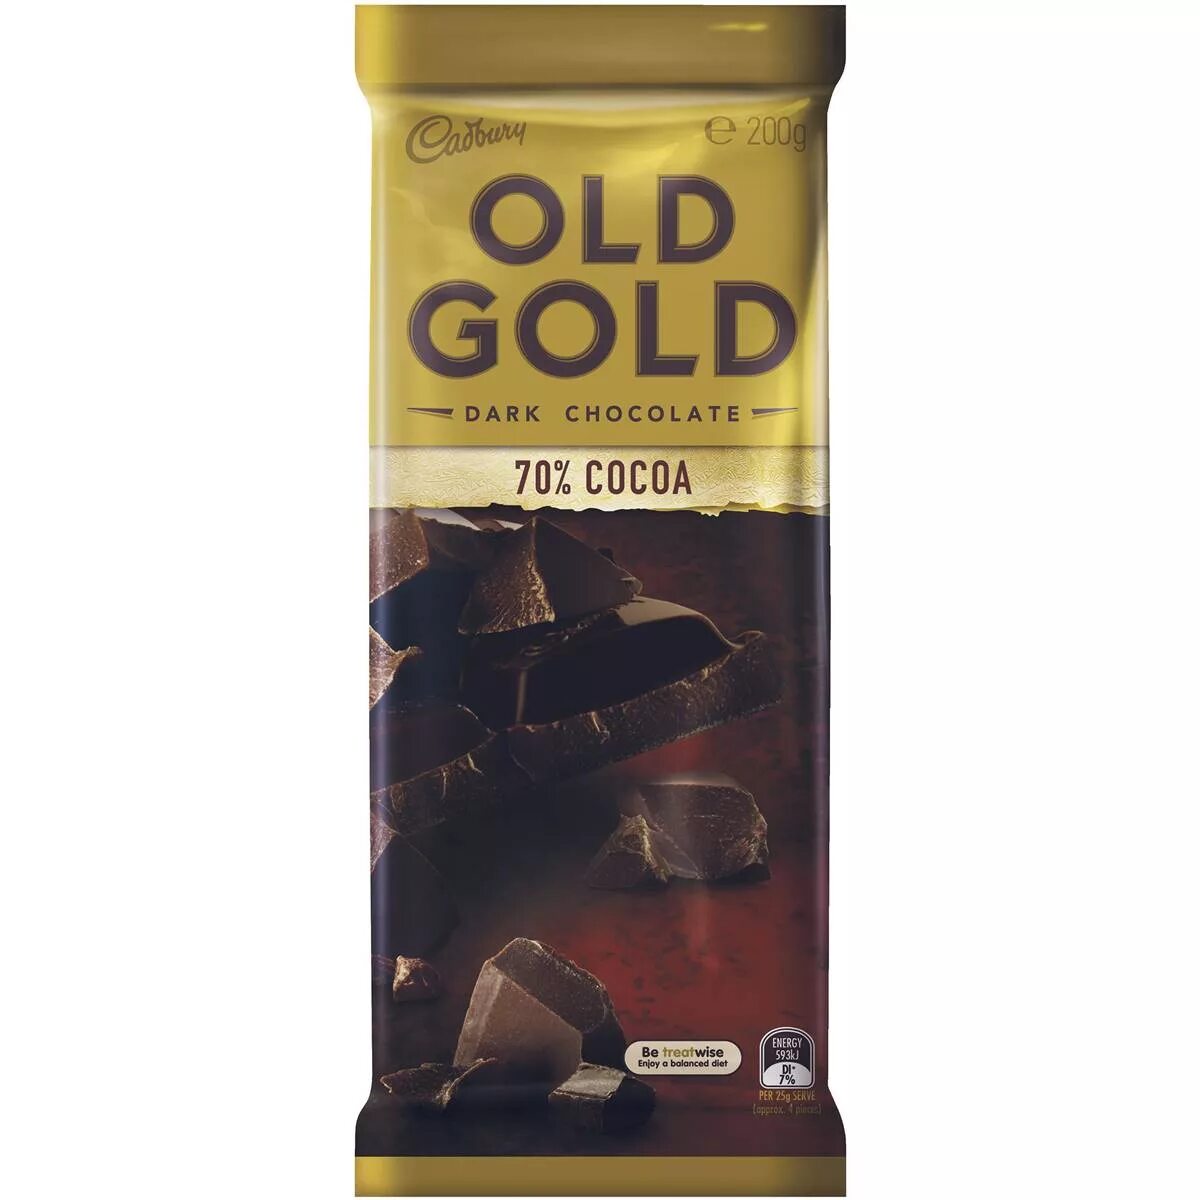 Голд Original Chocolate. Голд Original Chocolate кофе. Old Gold. Олд Голд Блэк.